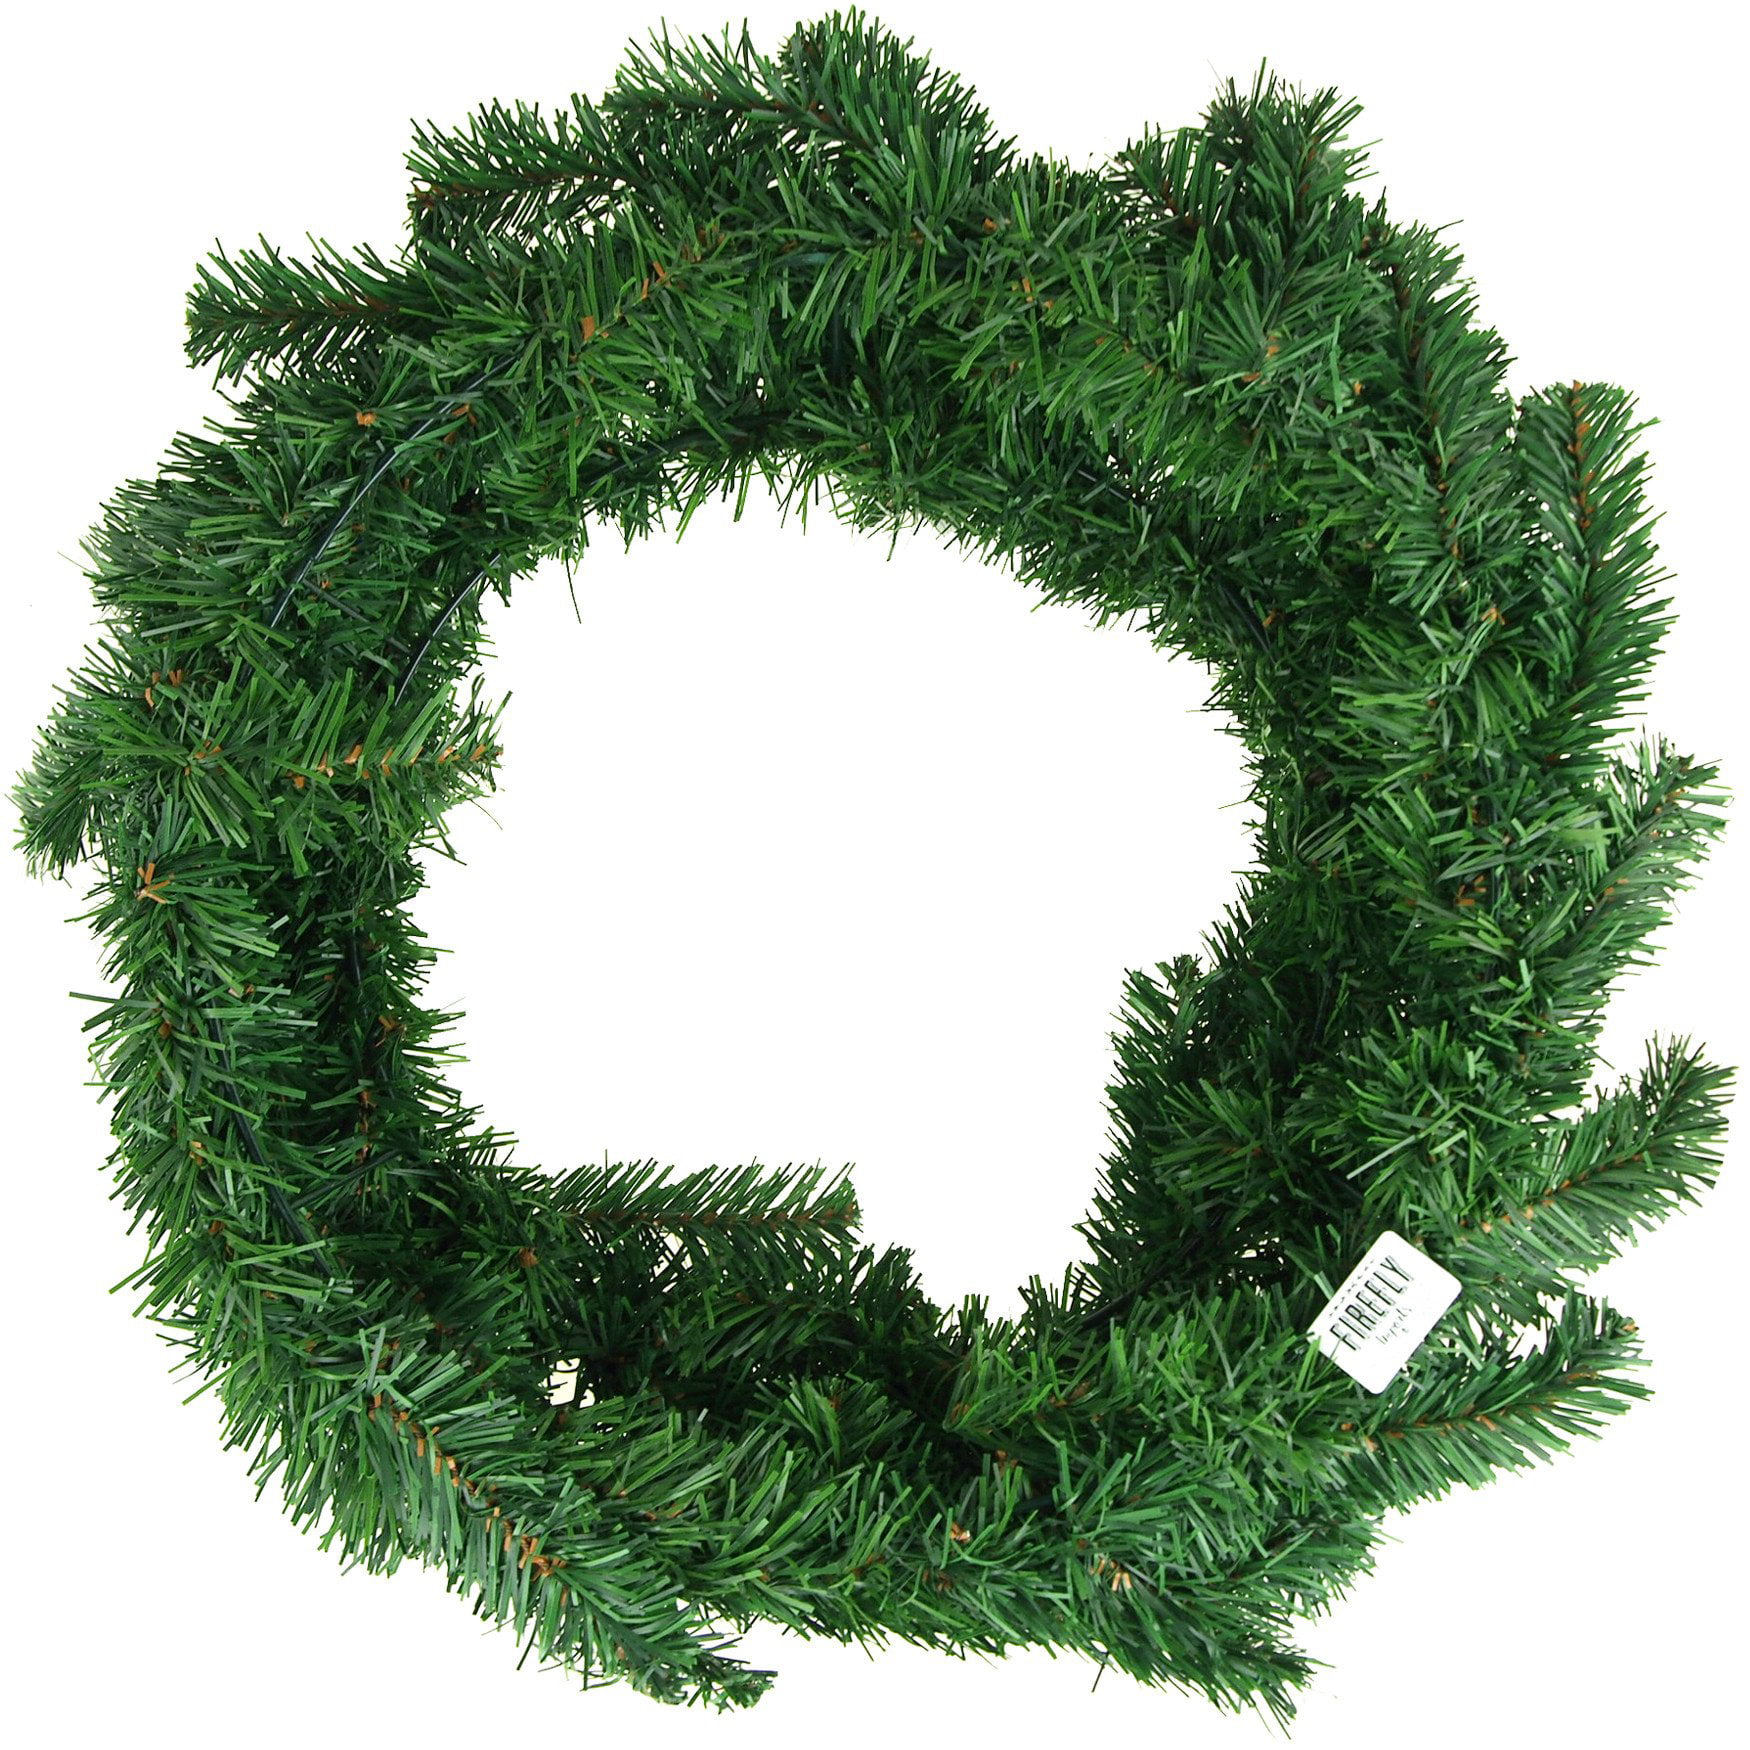 Plain wreaths for sale